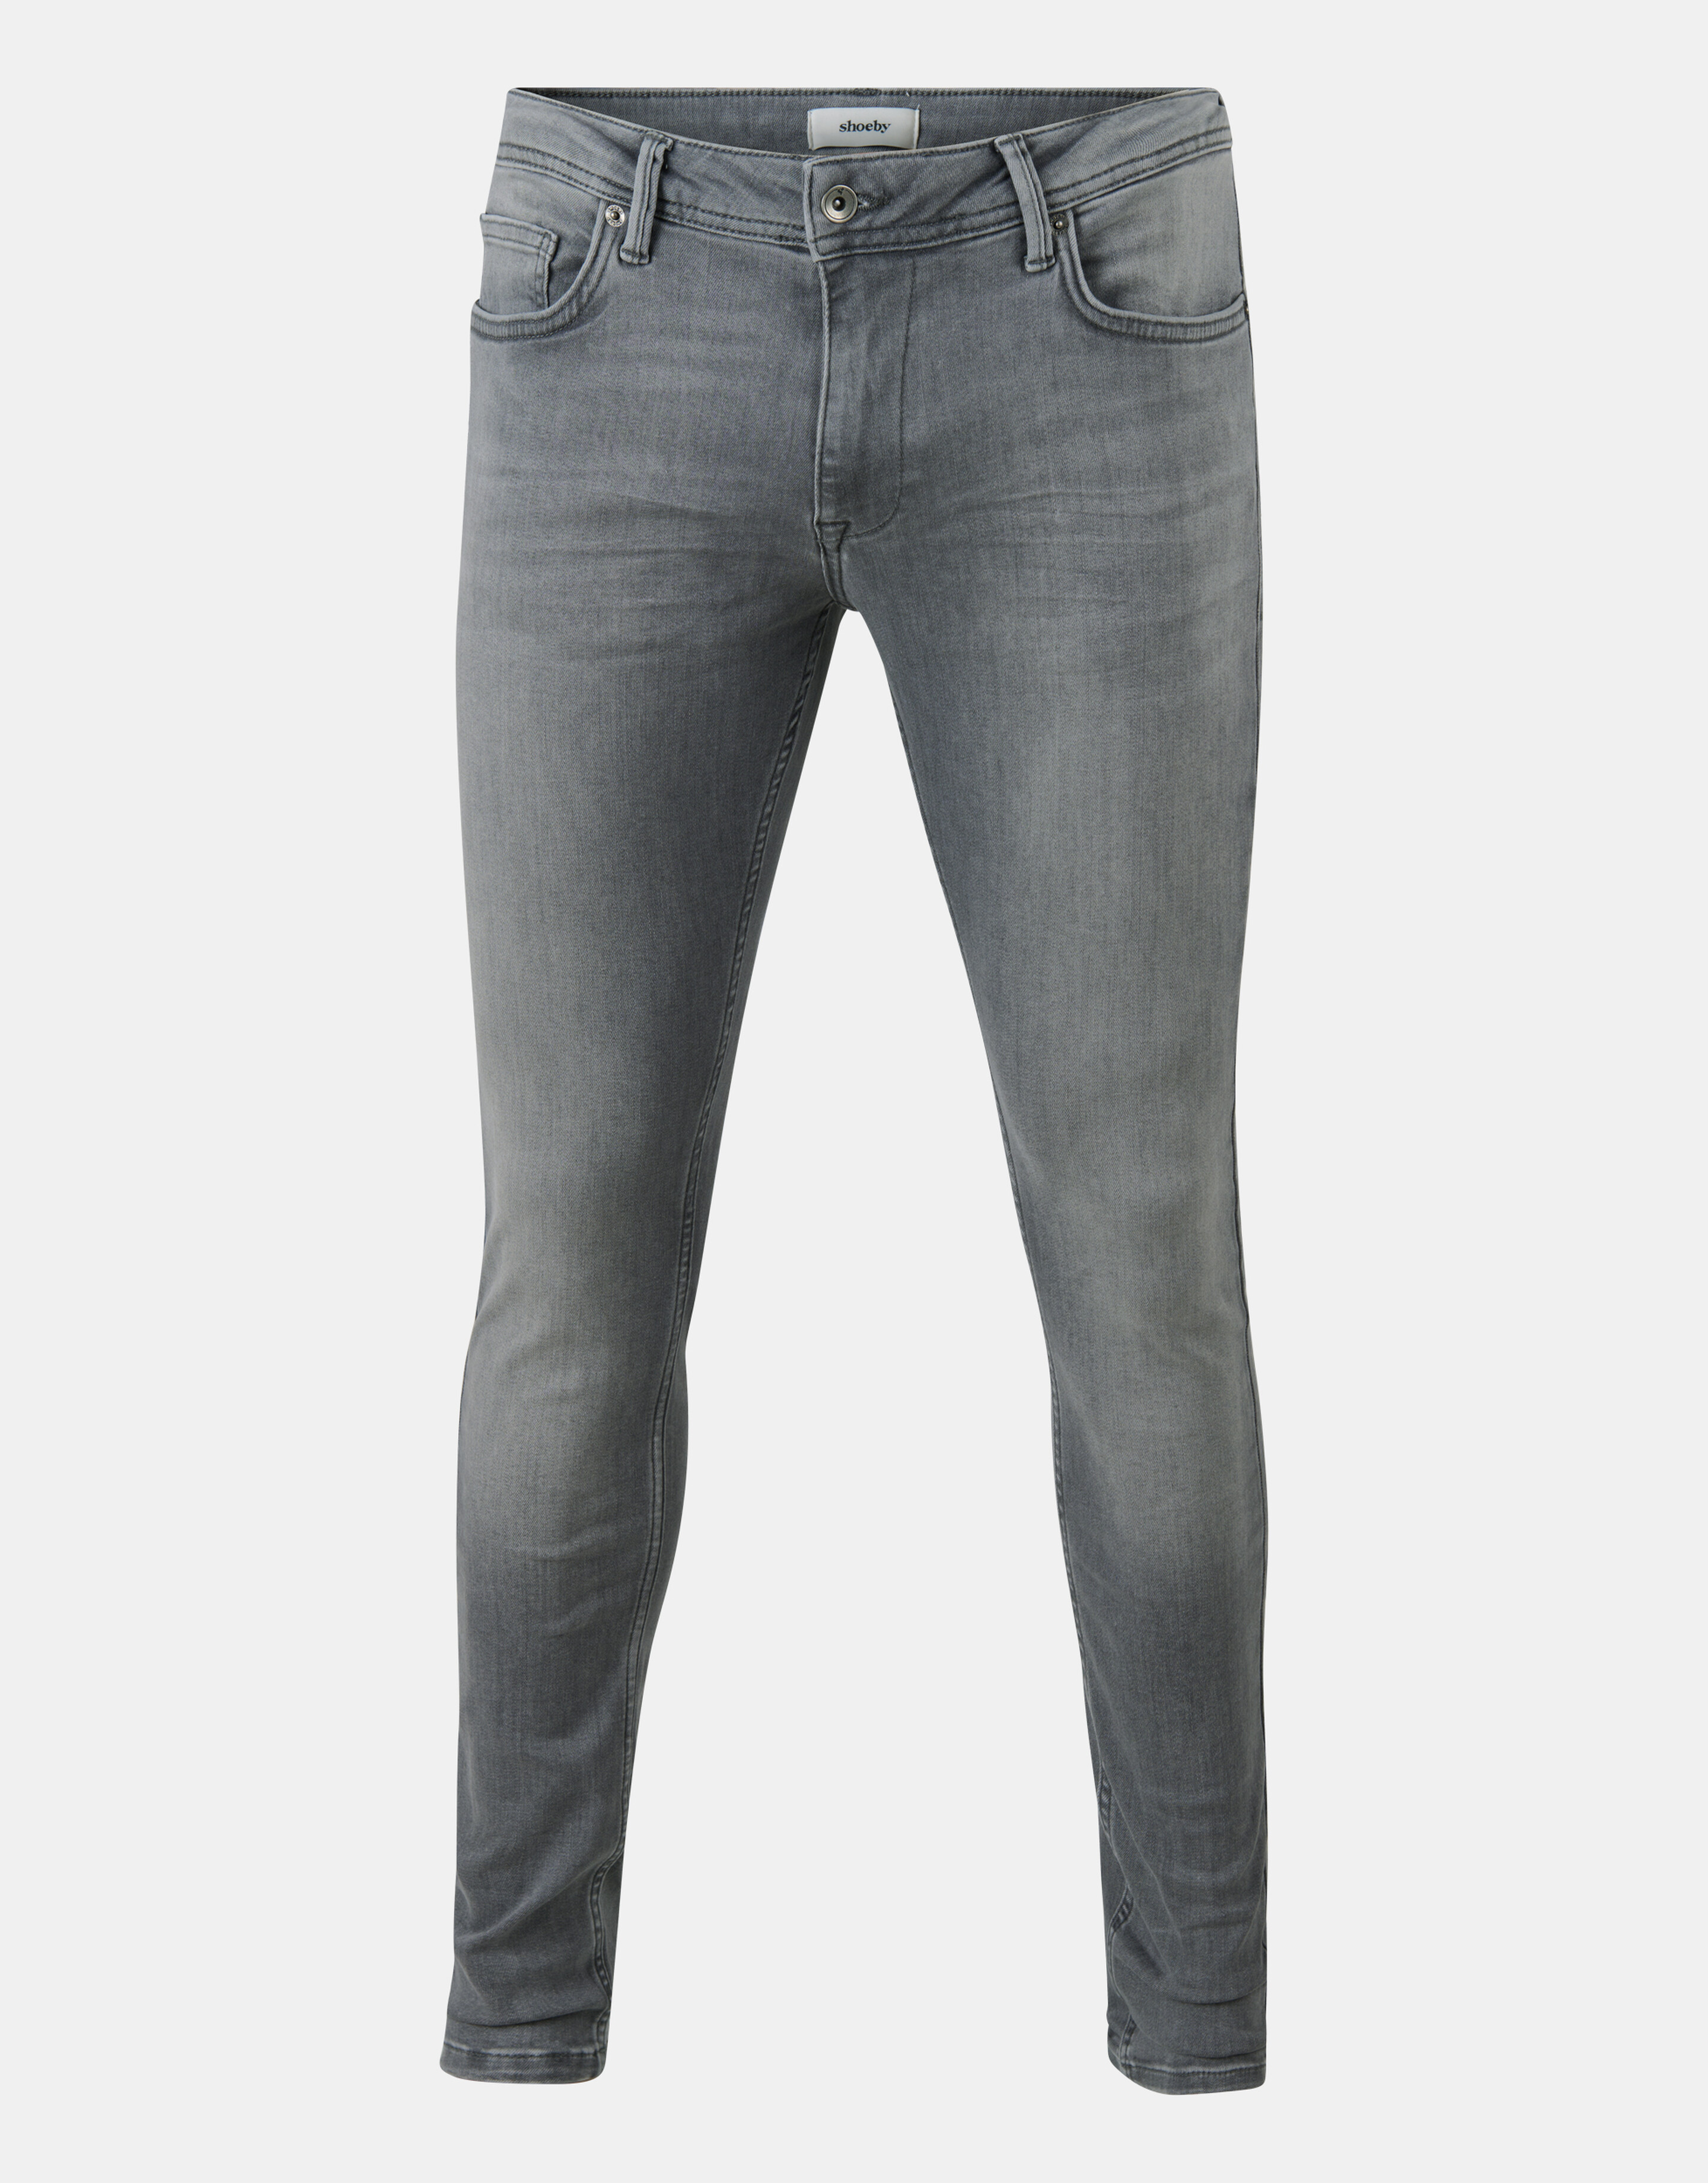 Skinny Jeans Grijs L34 Refill